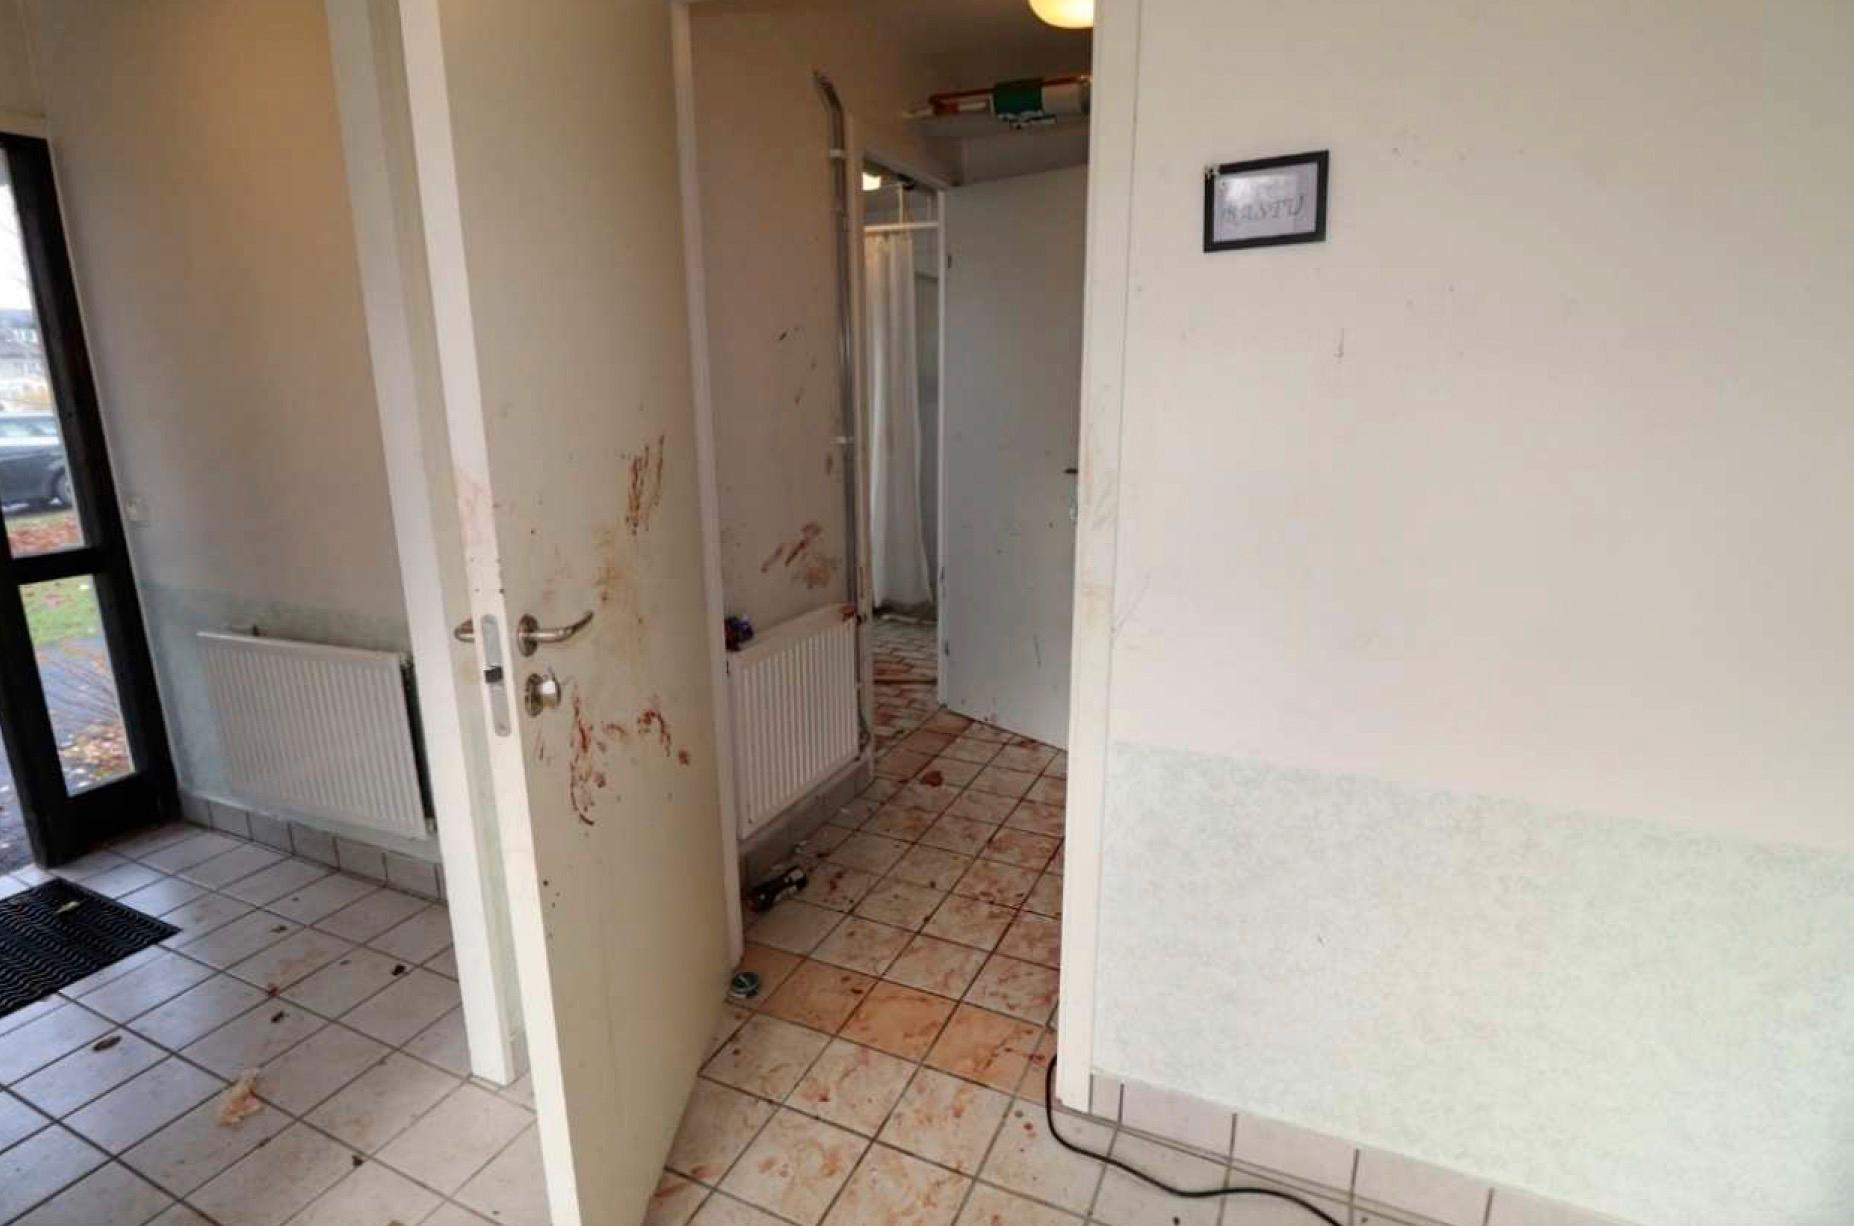 Bild på tvättstugan där mordförsöket skedde, ur förundersökningsprotokollet.